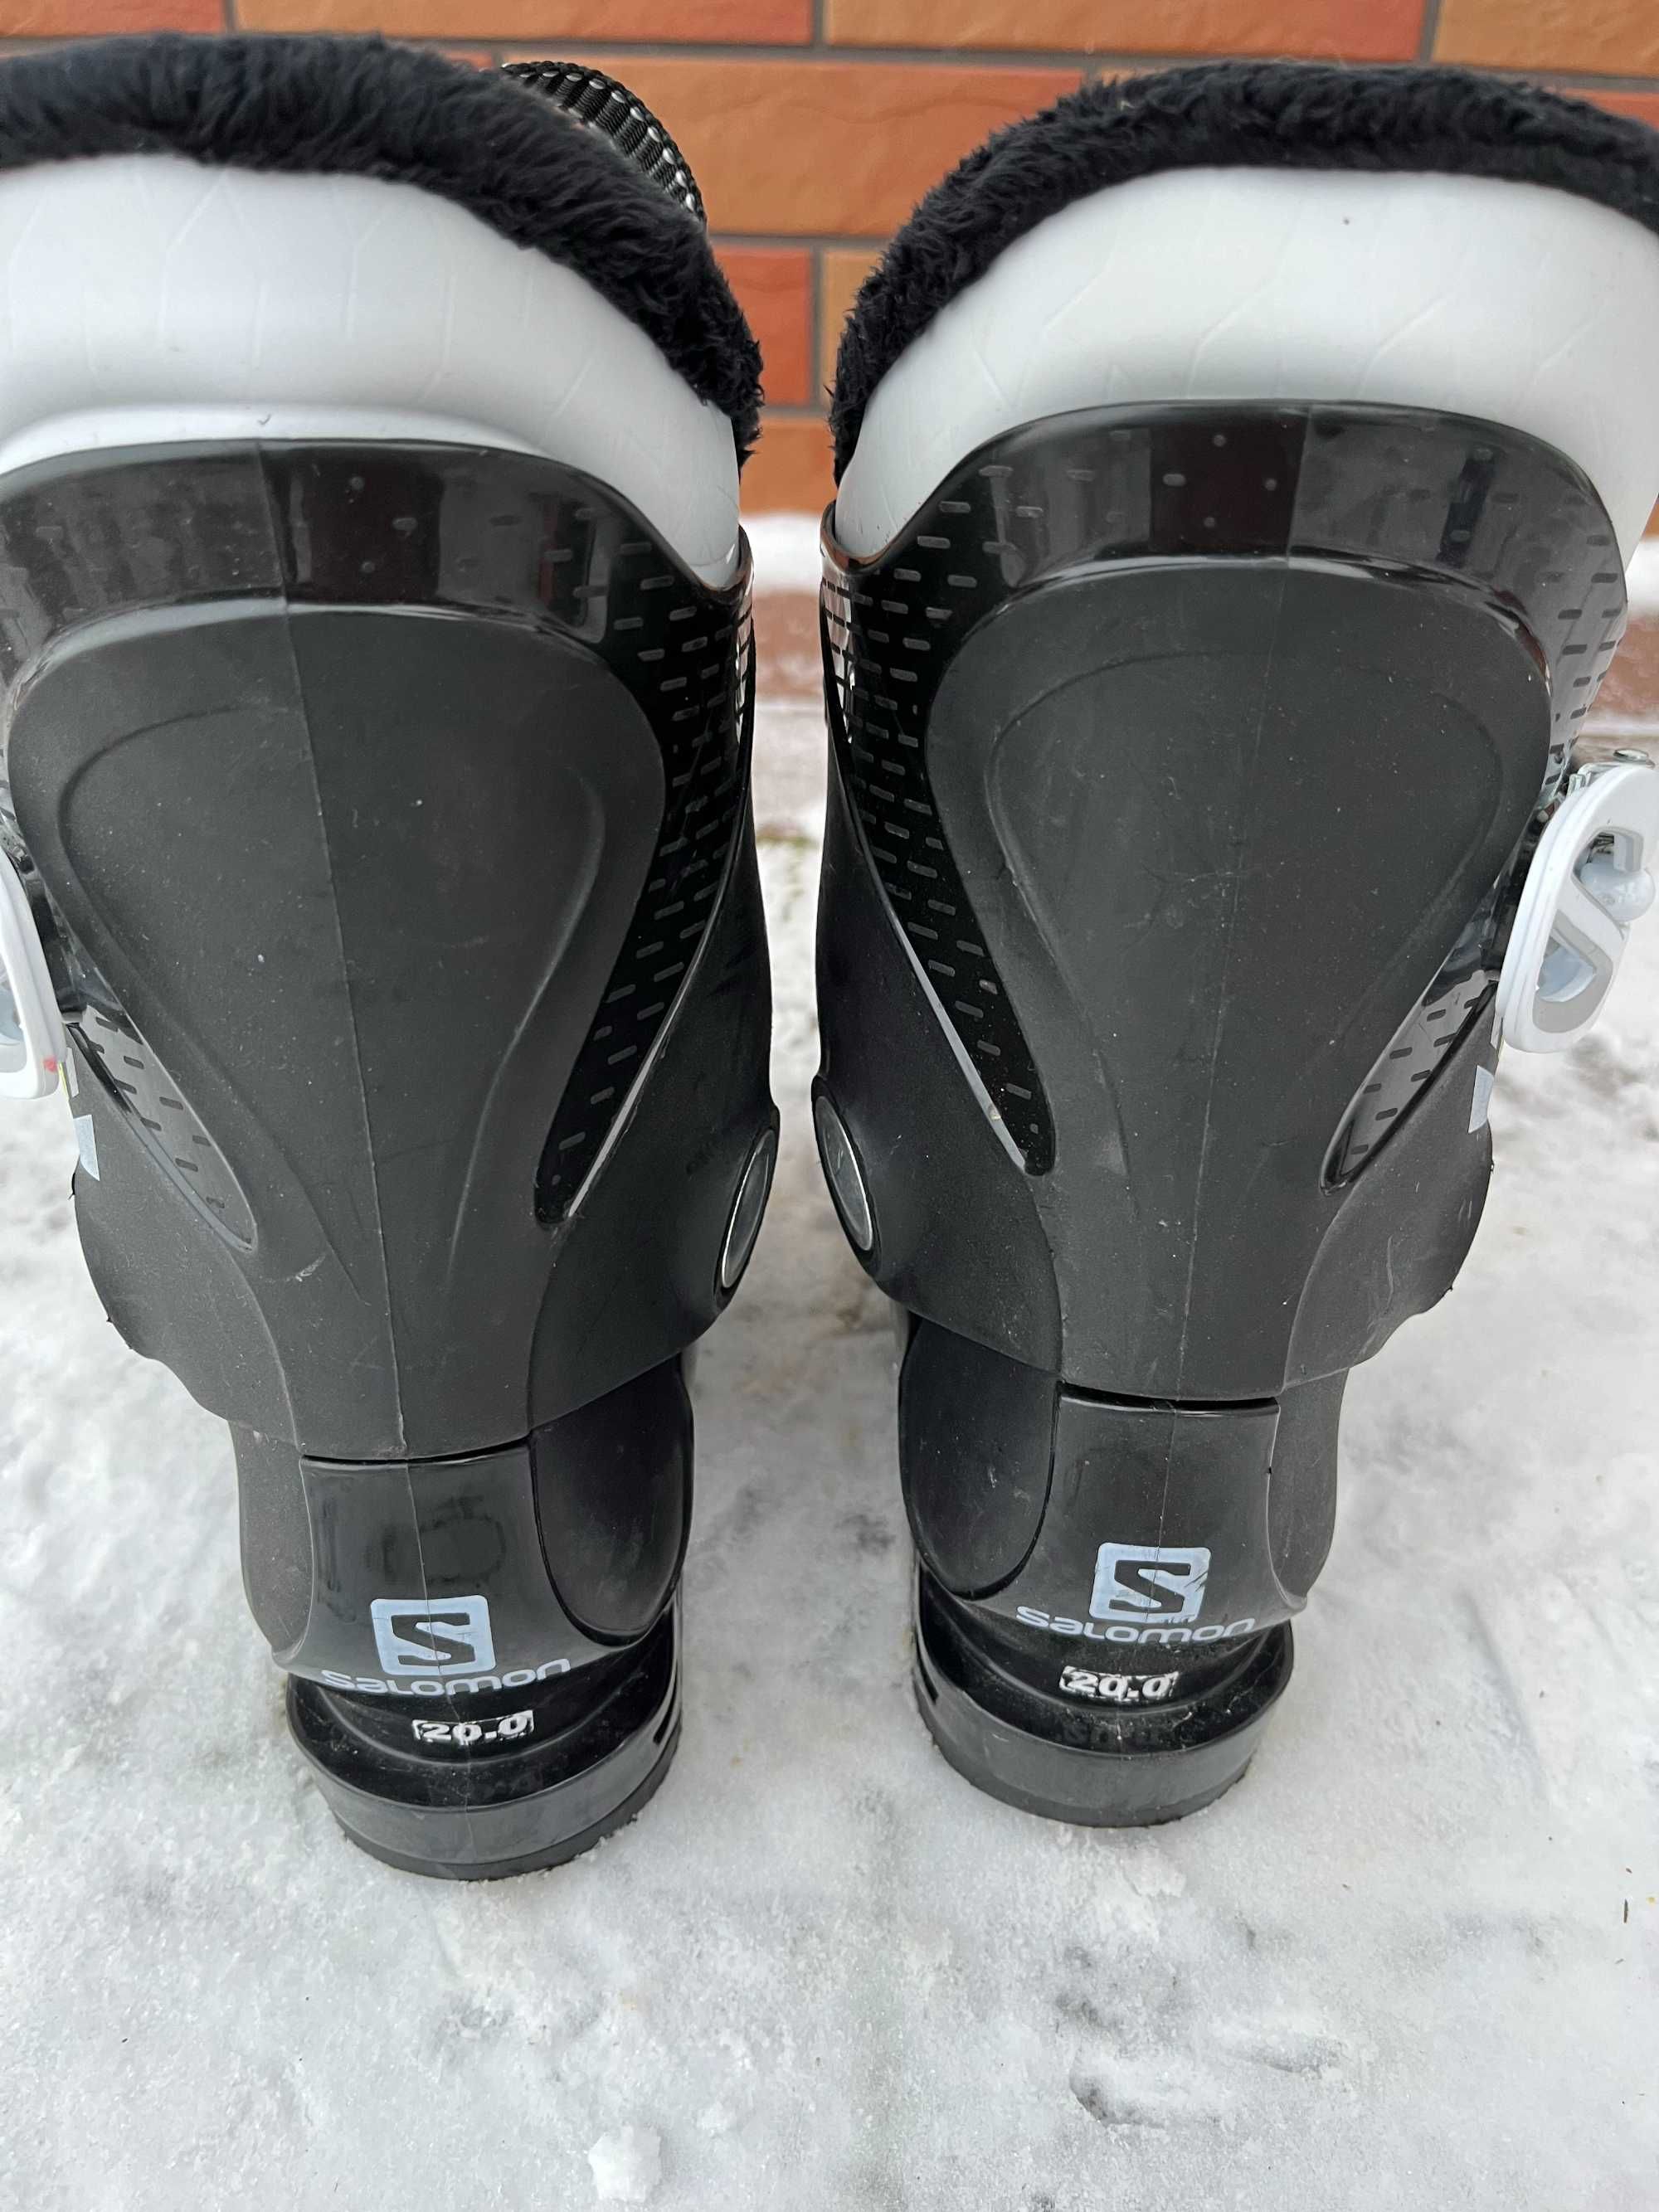 Buty narciarskie Salomon Team T2, wkładka 20-20,5cm